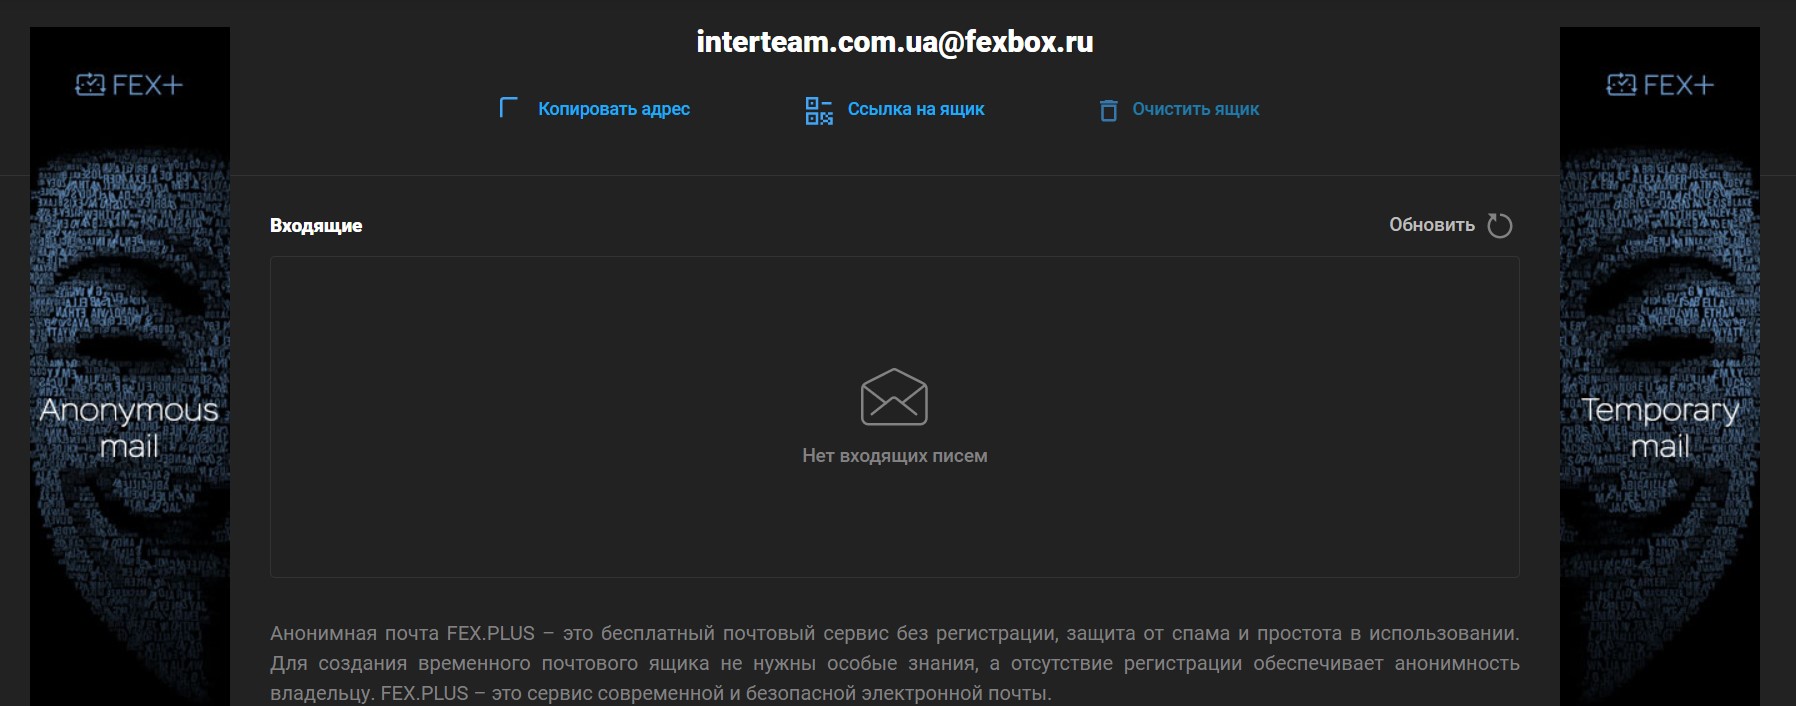 FEX + Instant Anonymous Mail көмегімен спамды ұмытыңыз